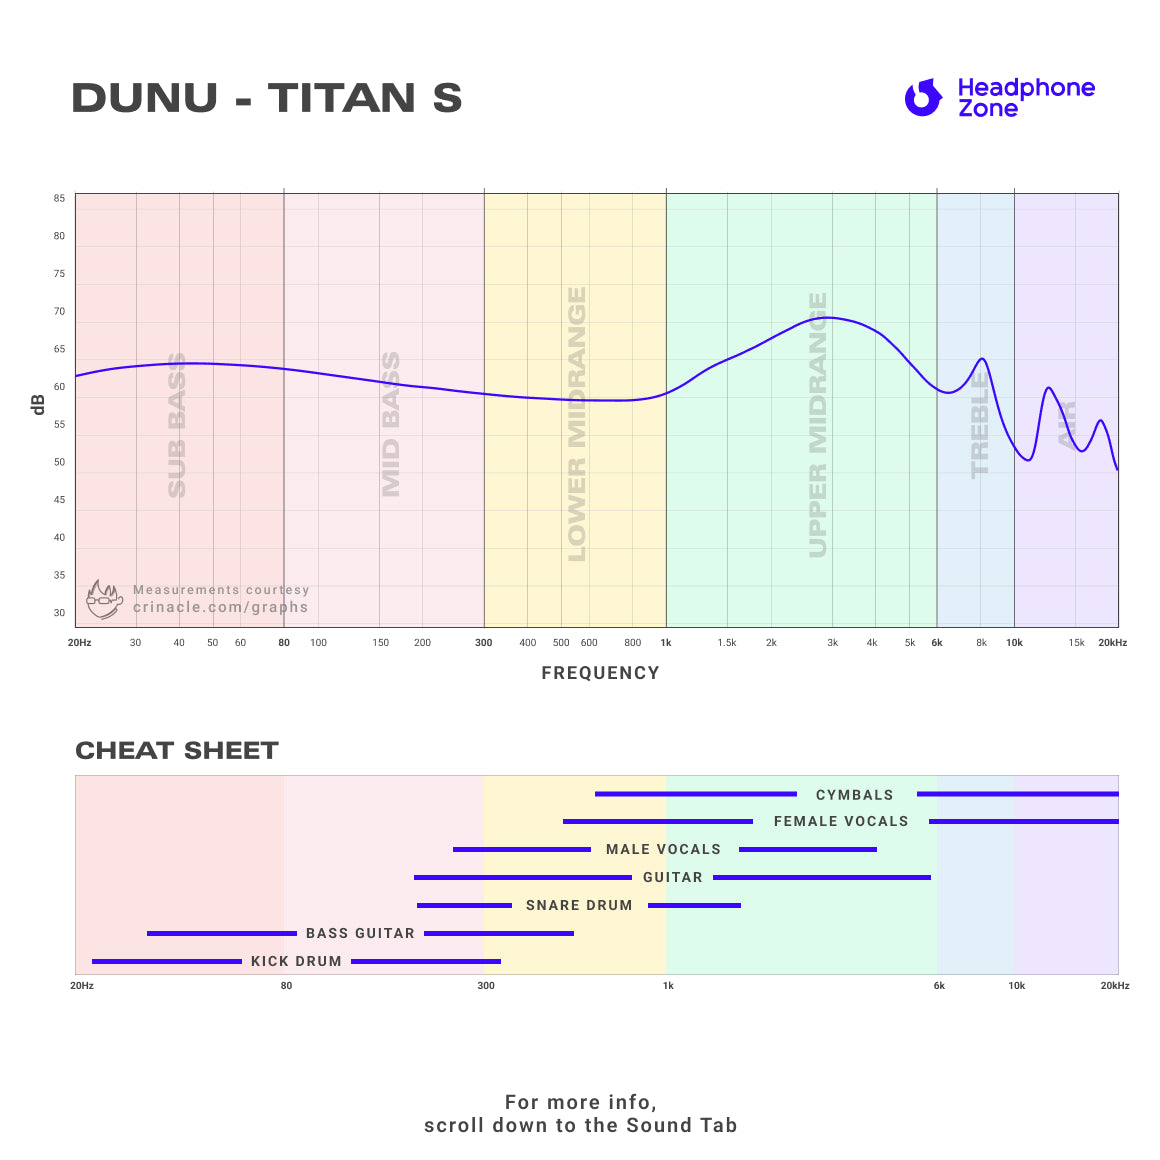 DUNU - TITAN S